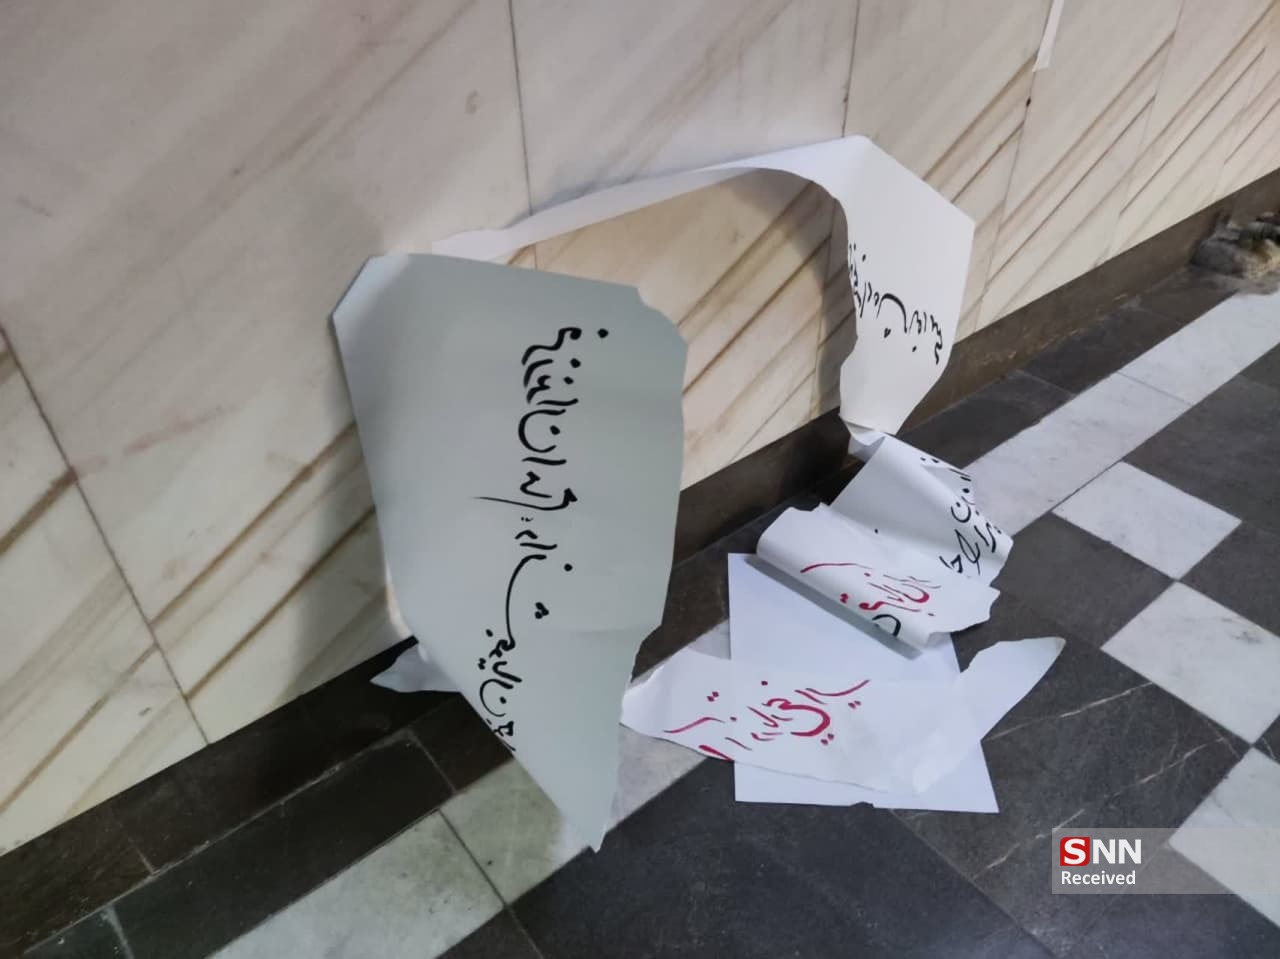 تخریب فضاسازی دانشگاه رازی کرمانشاه به مناسبت روز دانشجو / هتک حرمت به تصاویر شهدای امنیت